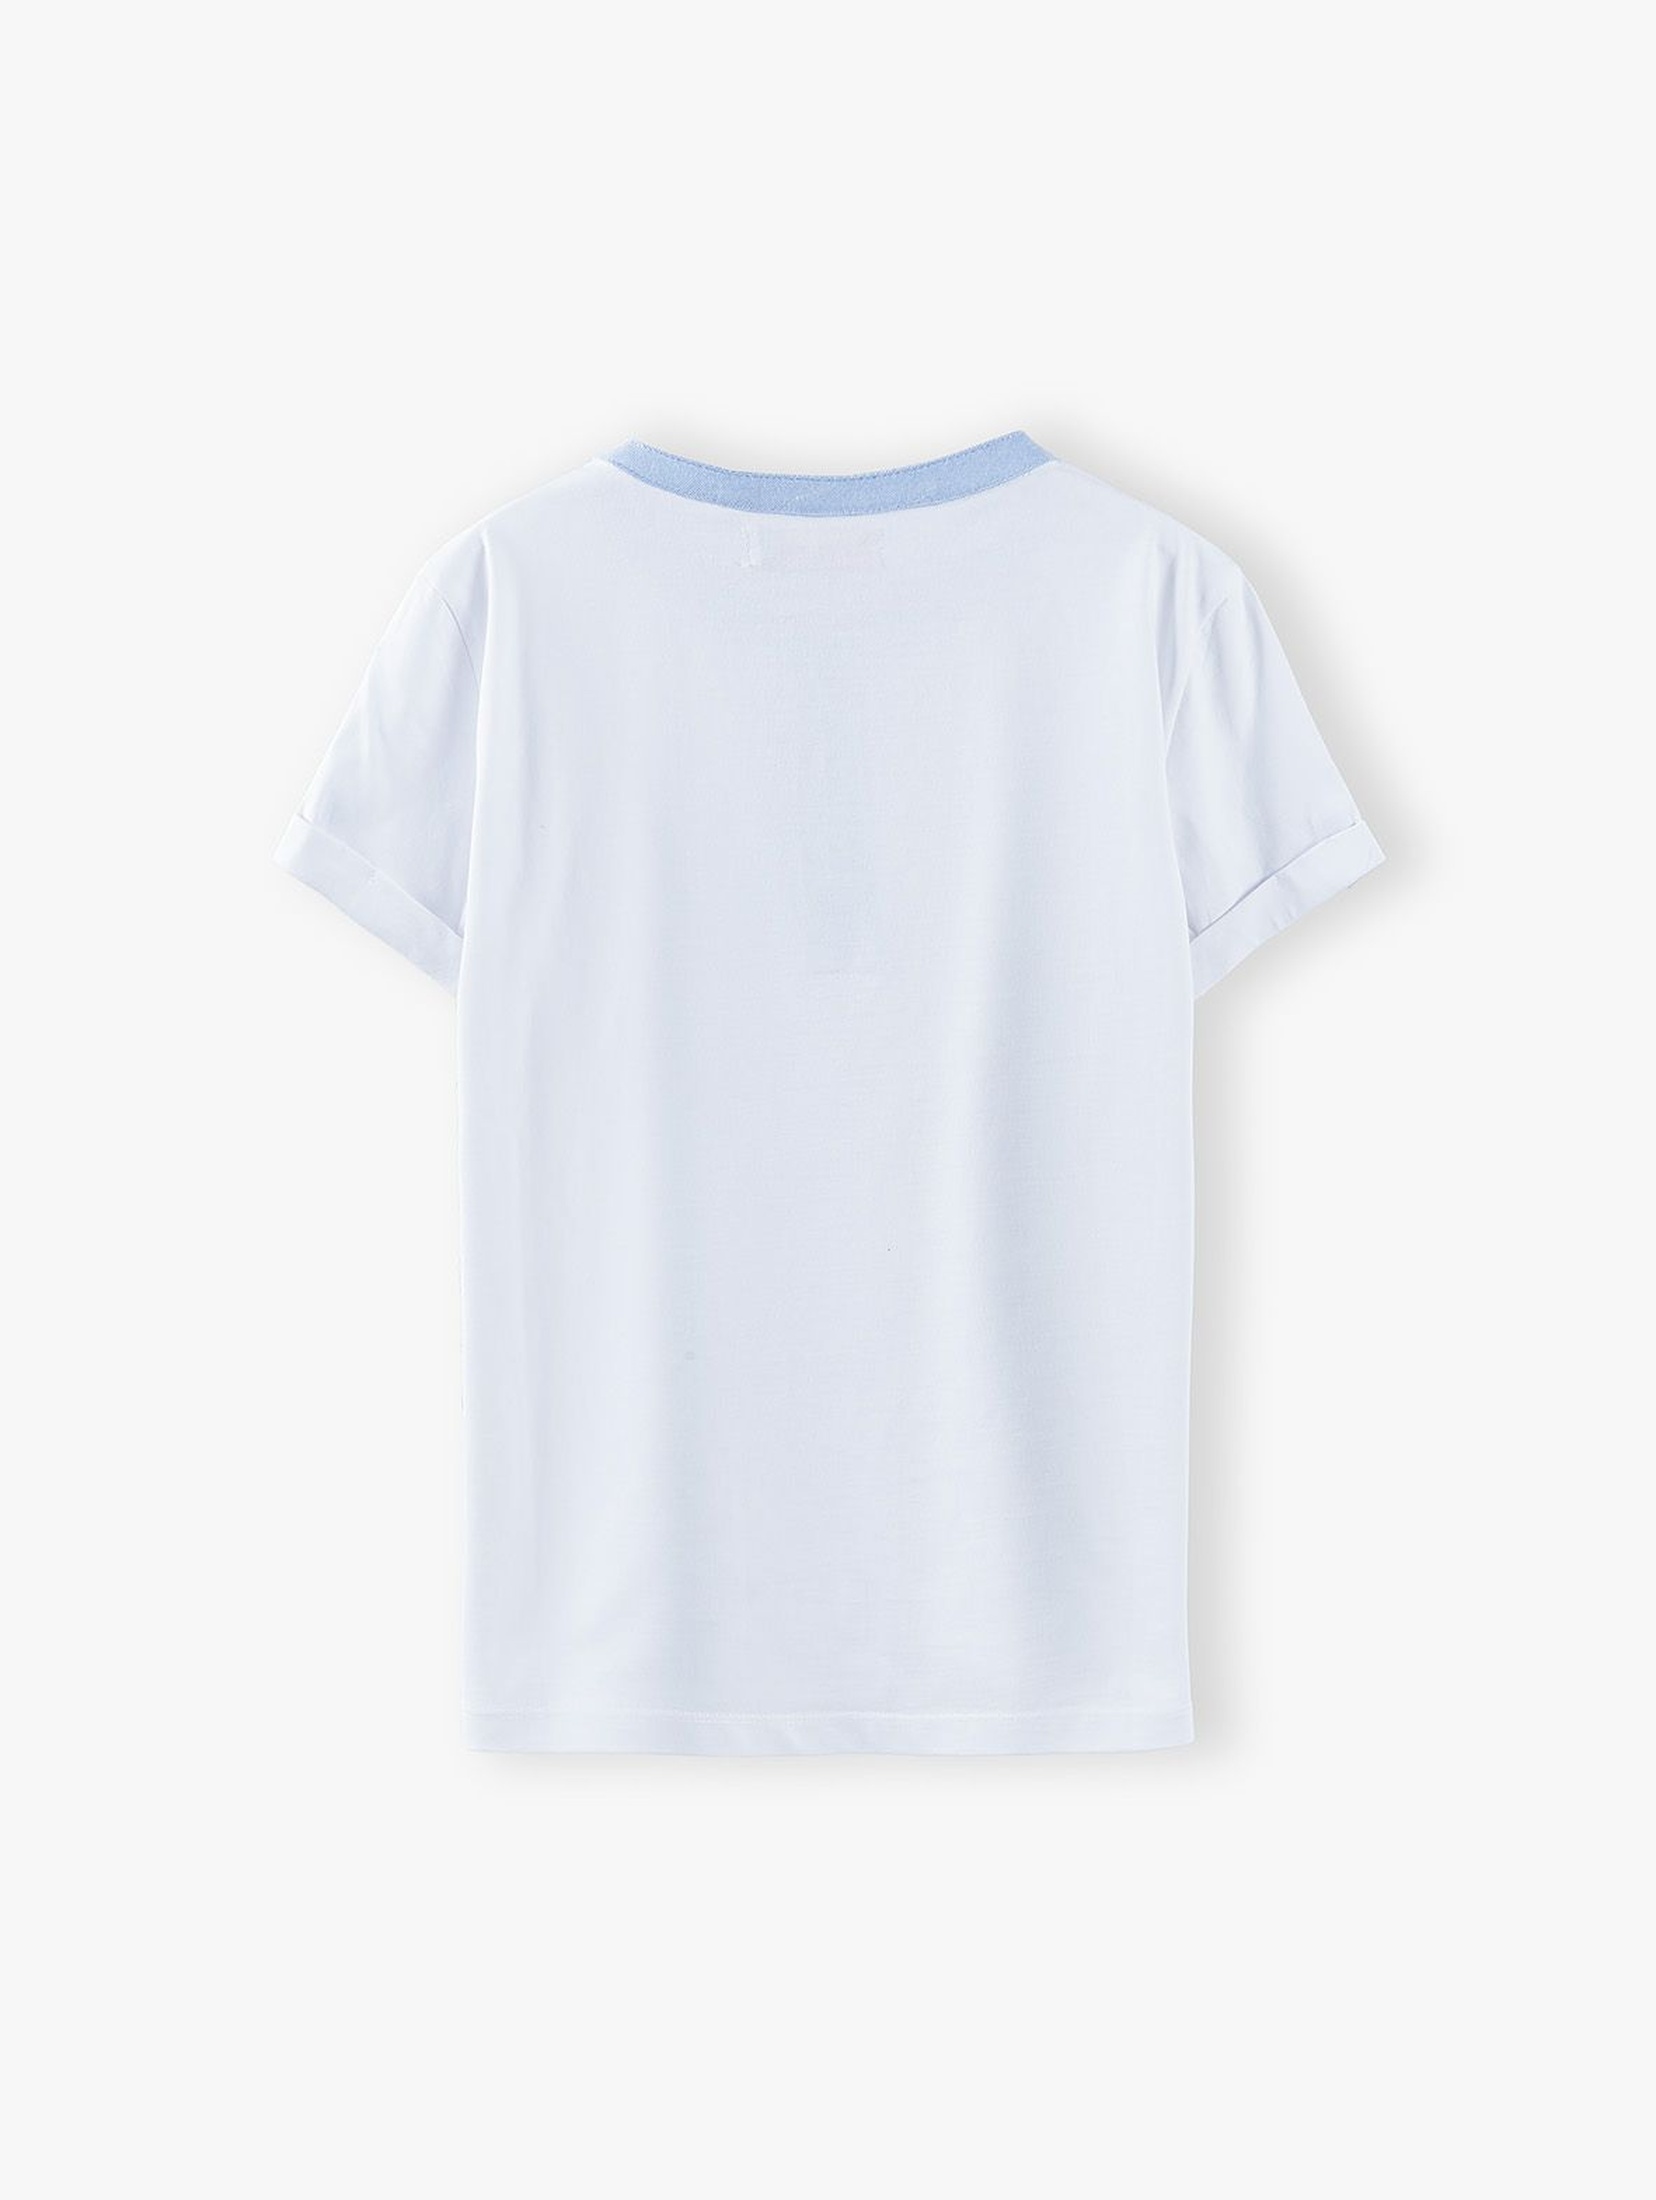 T-shirt chłopięcy w kolorze białym